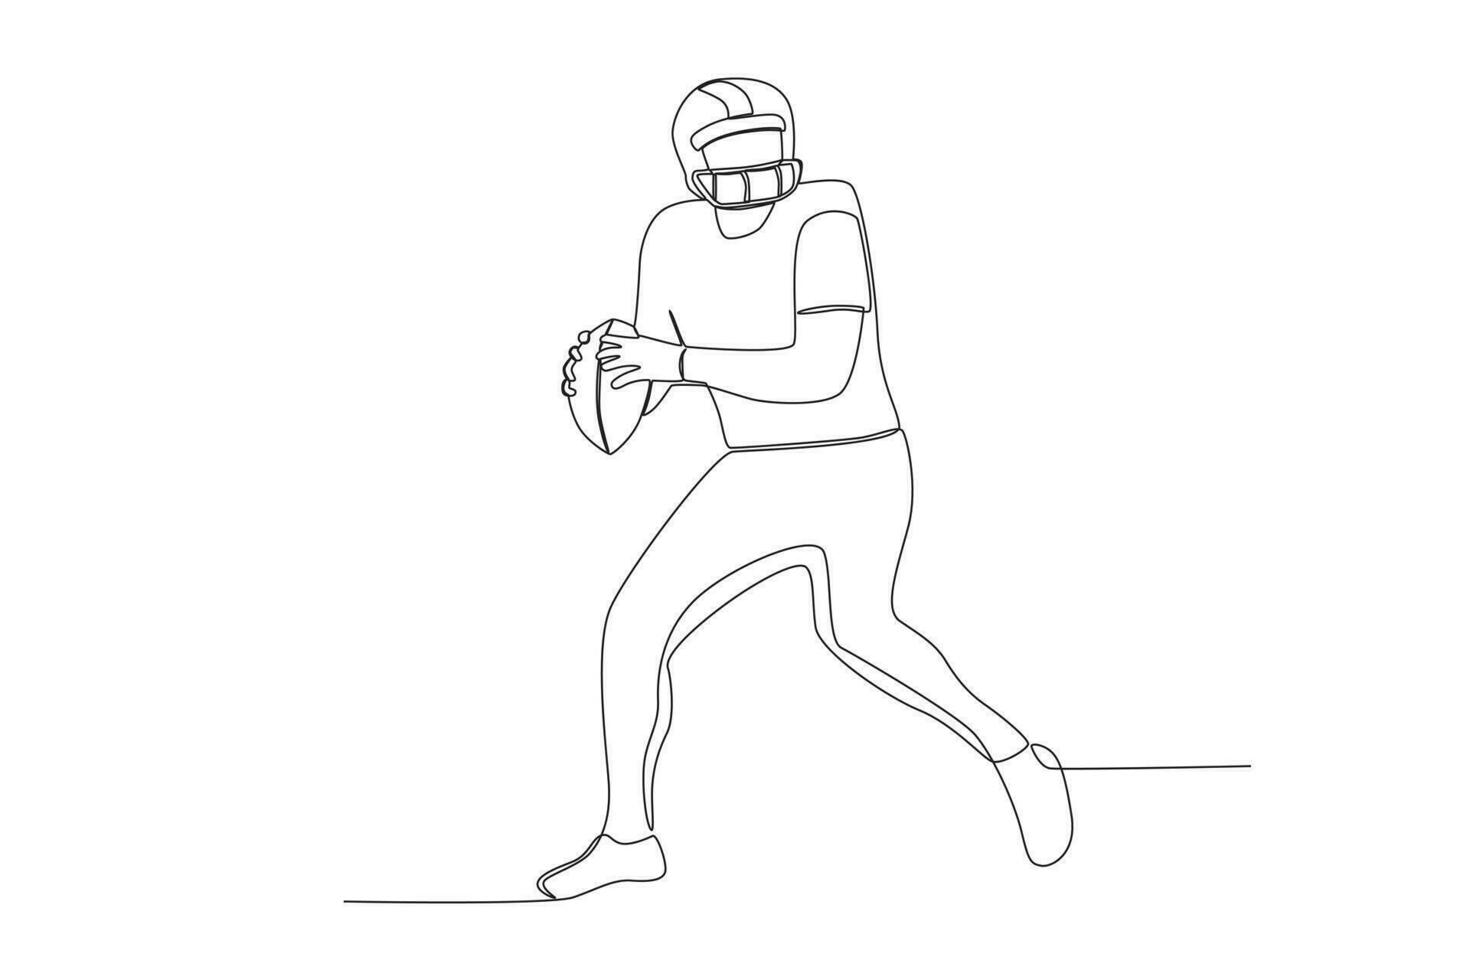 vector continuo línea de americano fútbol americano jugador capturas el pelota